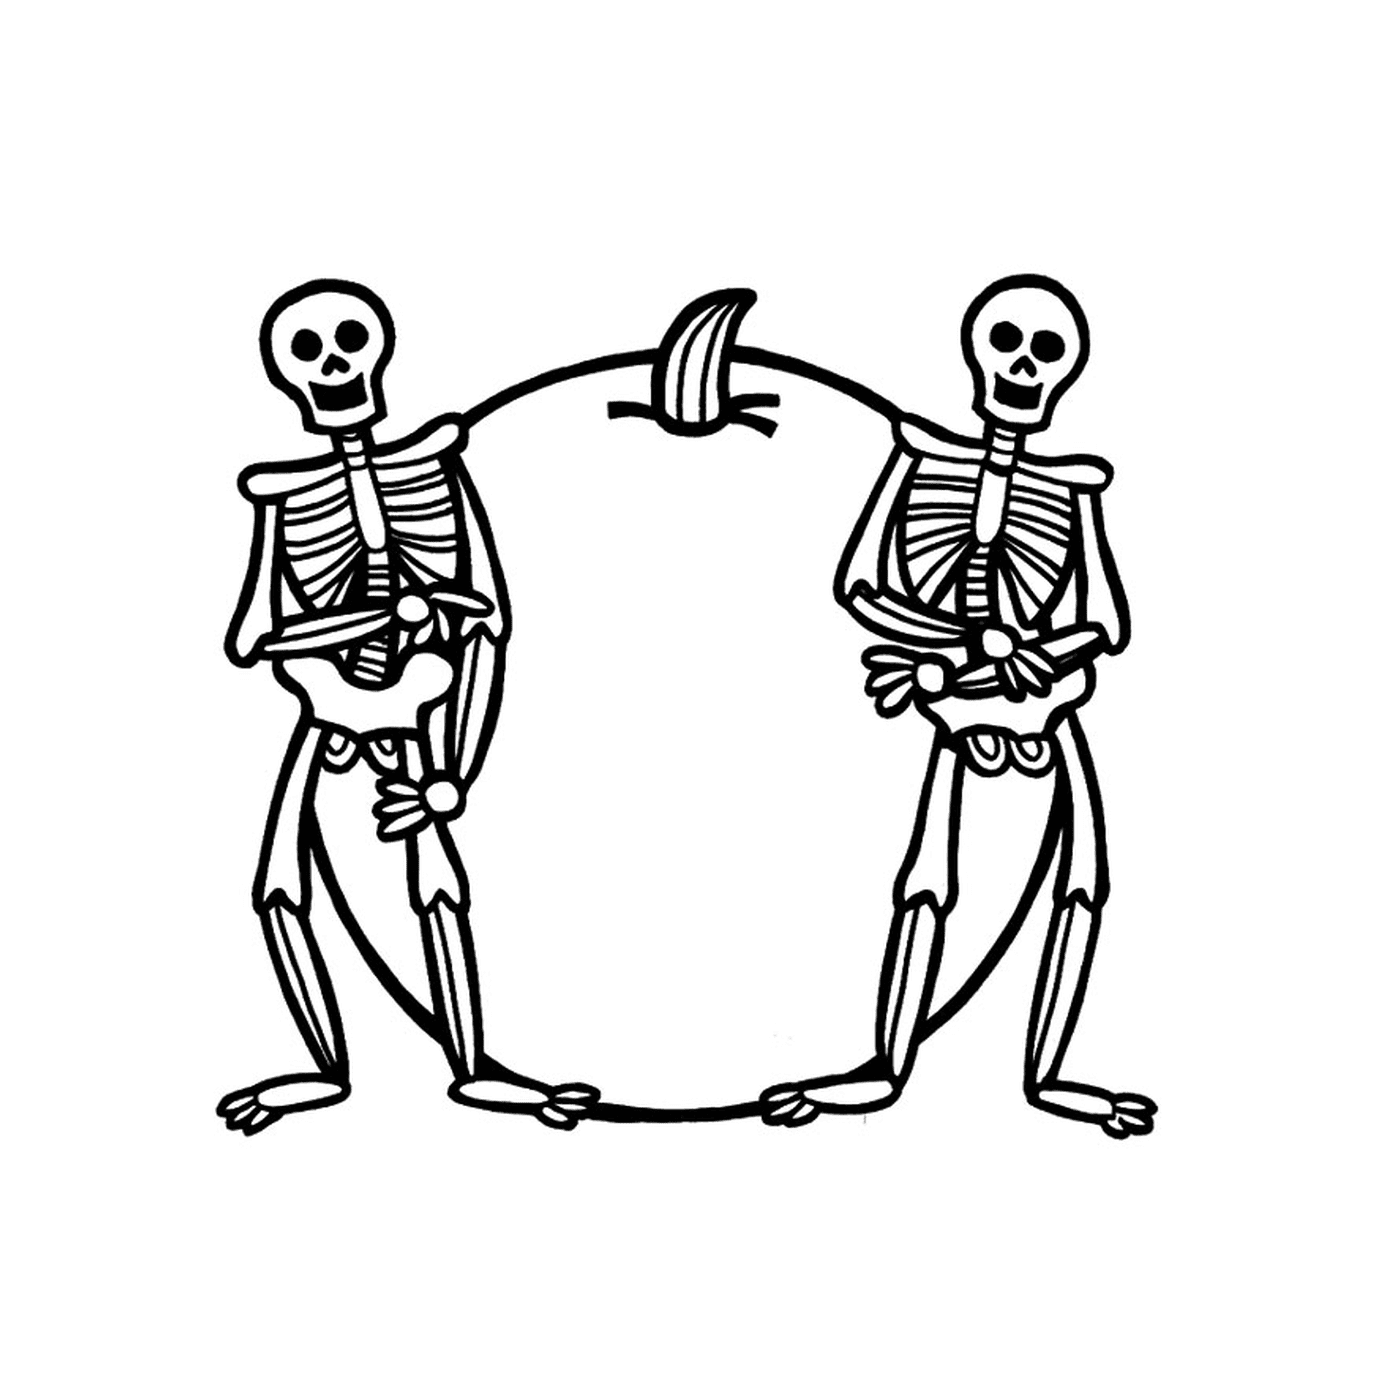  Zwei Skelette neben einem Apfel 